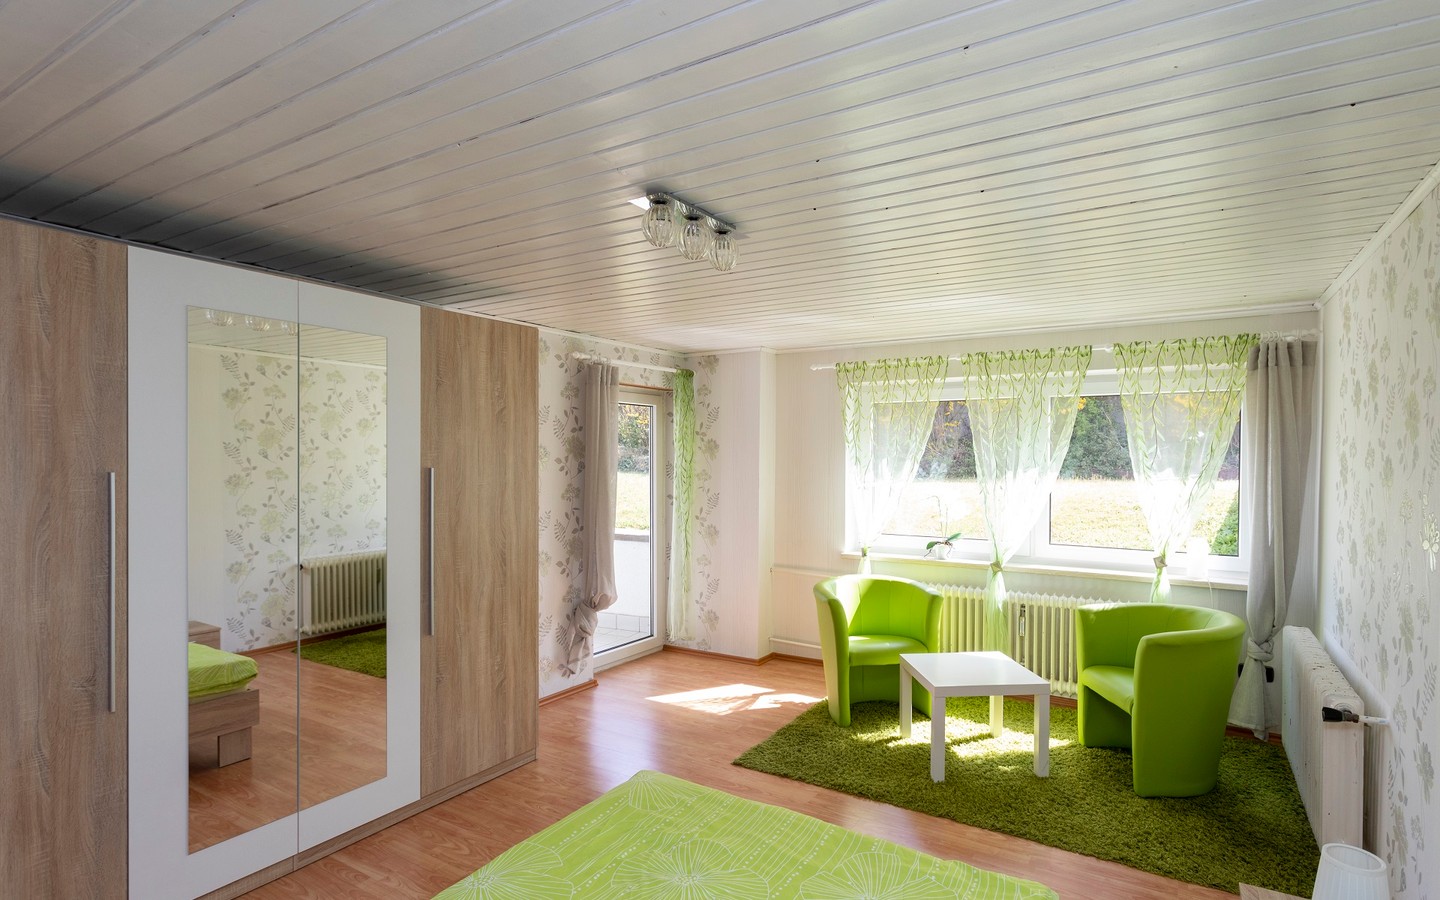 Zimmer 2 - Raum für individuelle Wohn(t)räume: Attraktives und ausbaufähiges Zweifamilienhaus in Dielheim